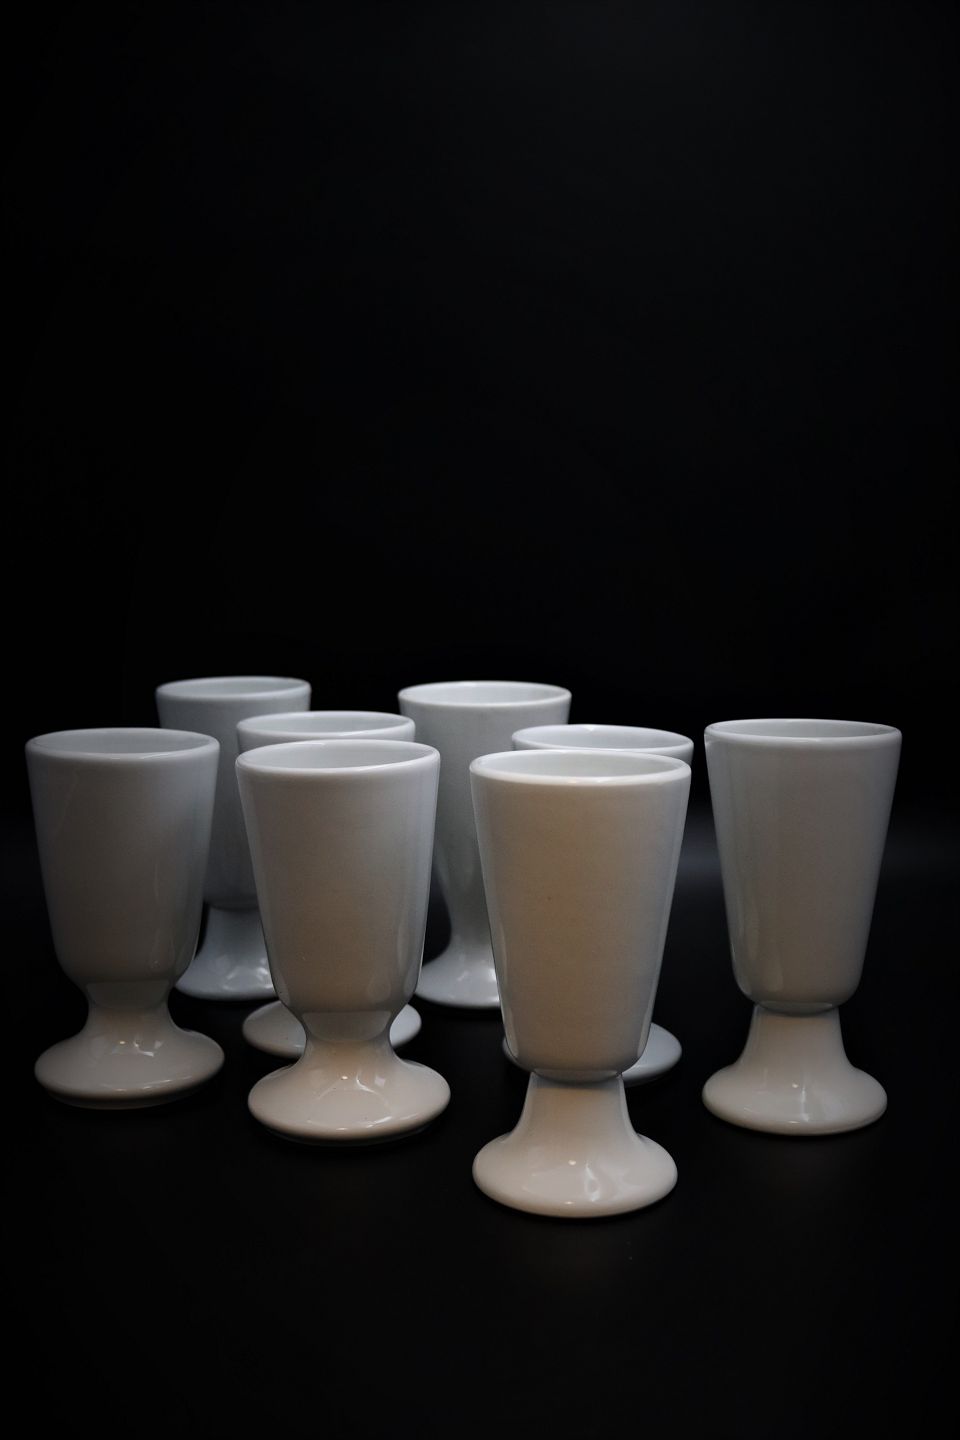 K&Co - Gamle franske kaffe krus på fod i kraftig hvid * Højde: 14 - 14,5cm.